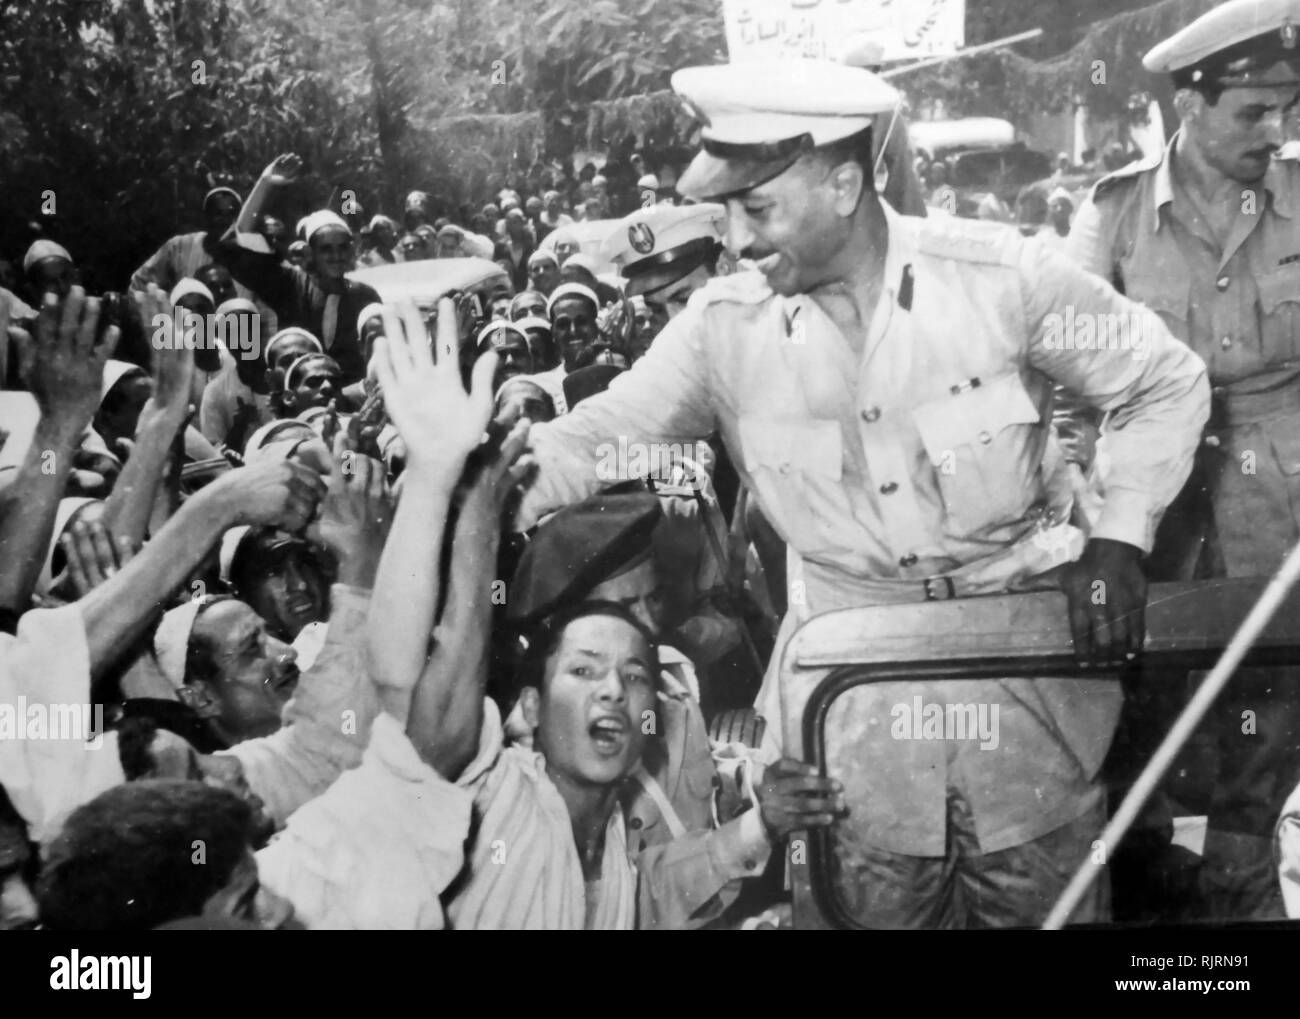 Les dirigeants y compris des officiers libres Anwar Sadat est assailli par la foule lors de la révolution égyptienne de 1952. Muhammad Anwar el-Sadate (1918 - 1981), Président de l'Égypte, au service du 15 octobre 1970 jusqu'à son assassinat par des officiers de l'armée intégriste le 6 octobre 1981. Sadat a été membre senior de l'Agents libres qui a renversé le roi Farouk dans la révolution égyptienne de 1952, et un proche confident du président Gamal Abdel Nasser, en vertu de laquelle il a servi comme Vice-président à deux reprises et auquel il succède en tant que président en 1970. Banque D'Images